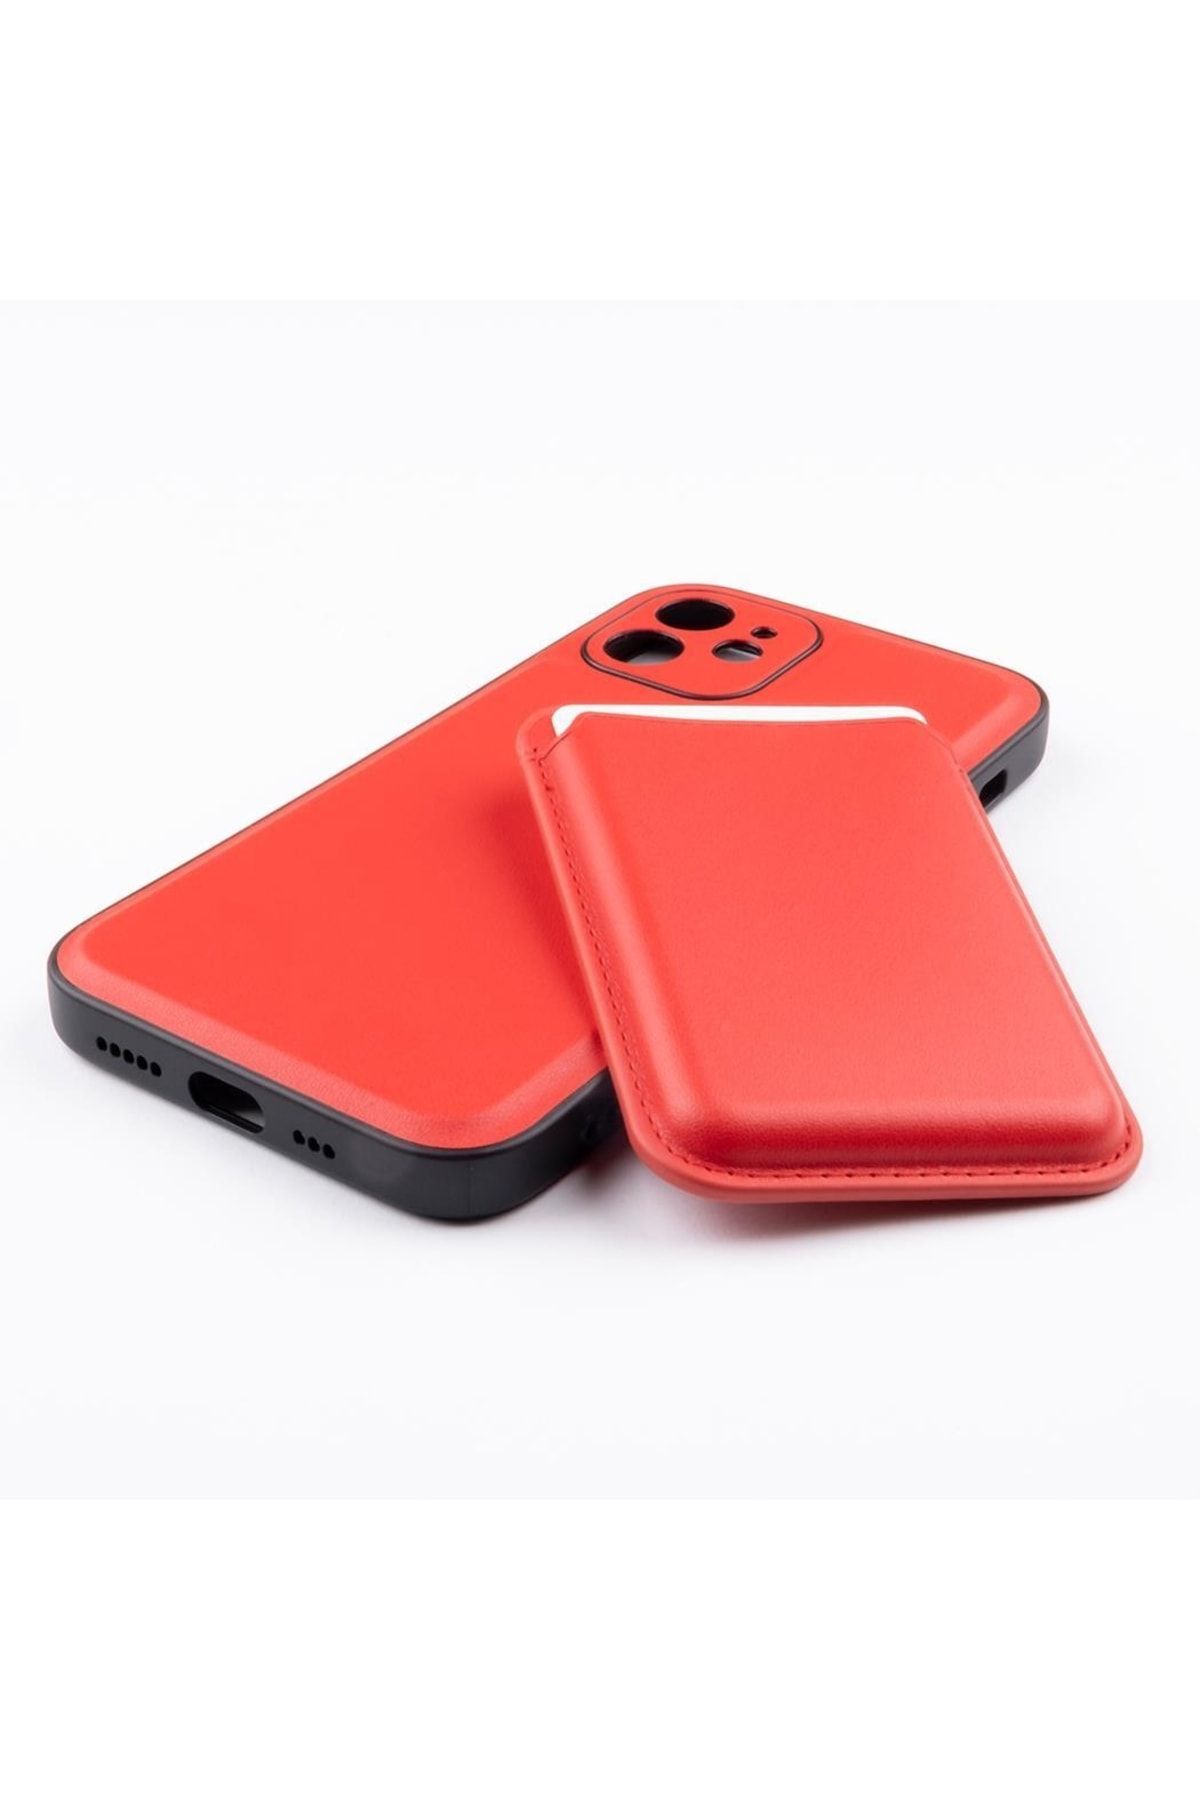 Jopus Iphone 12 Js-275 Gravity Cüzdanli Silikon Kılıf Kırmızı